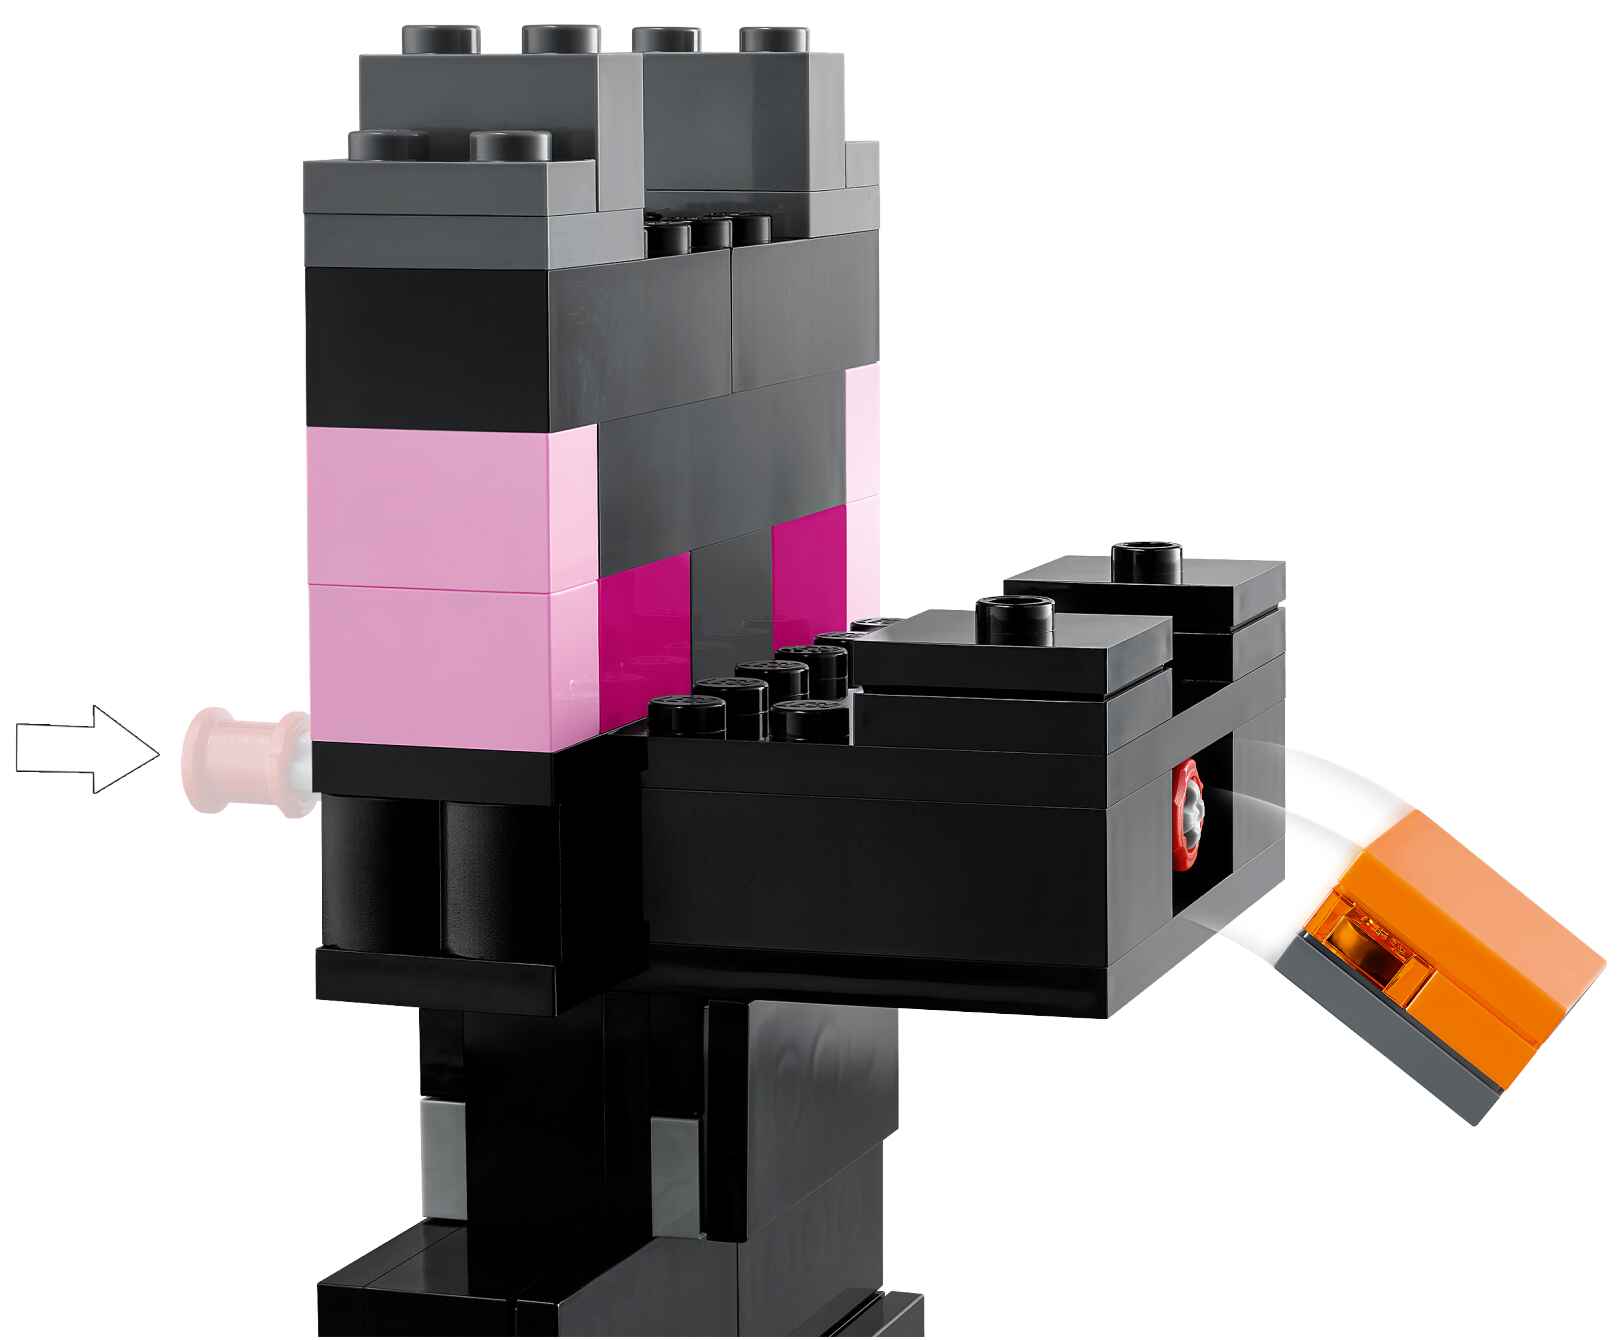 LEGO 21242 Minecraft Die End-Arena, Endkrieger, Drachenbogenschützen, Enderman